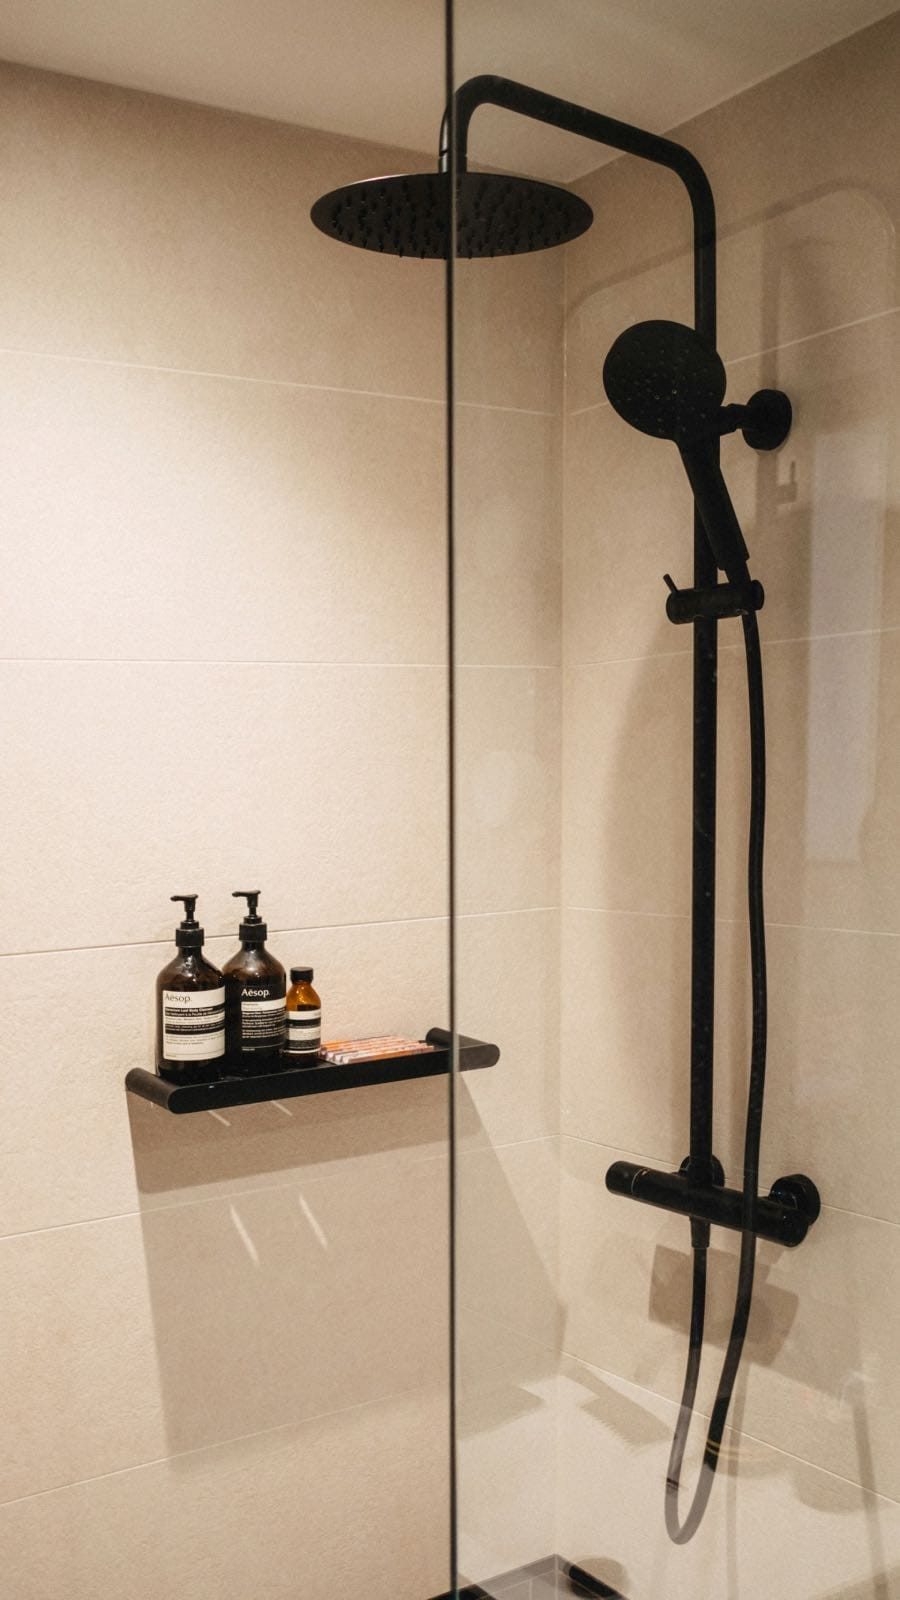 baño moderno industrial reformado con ducha negra y mampara minimalista